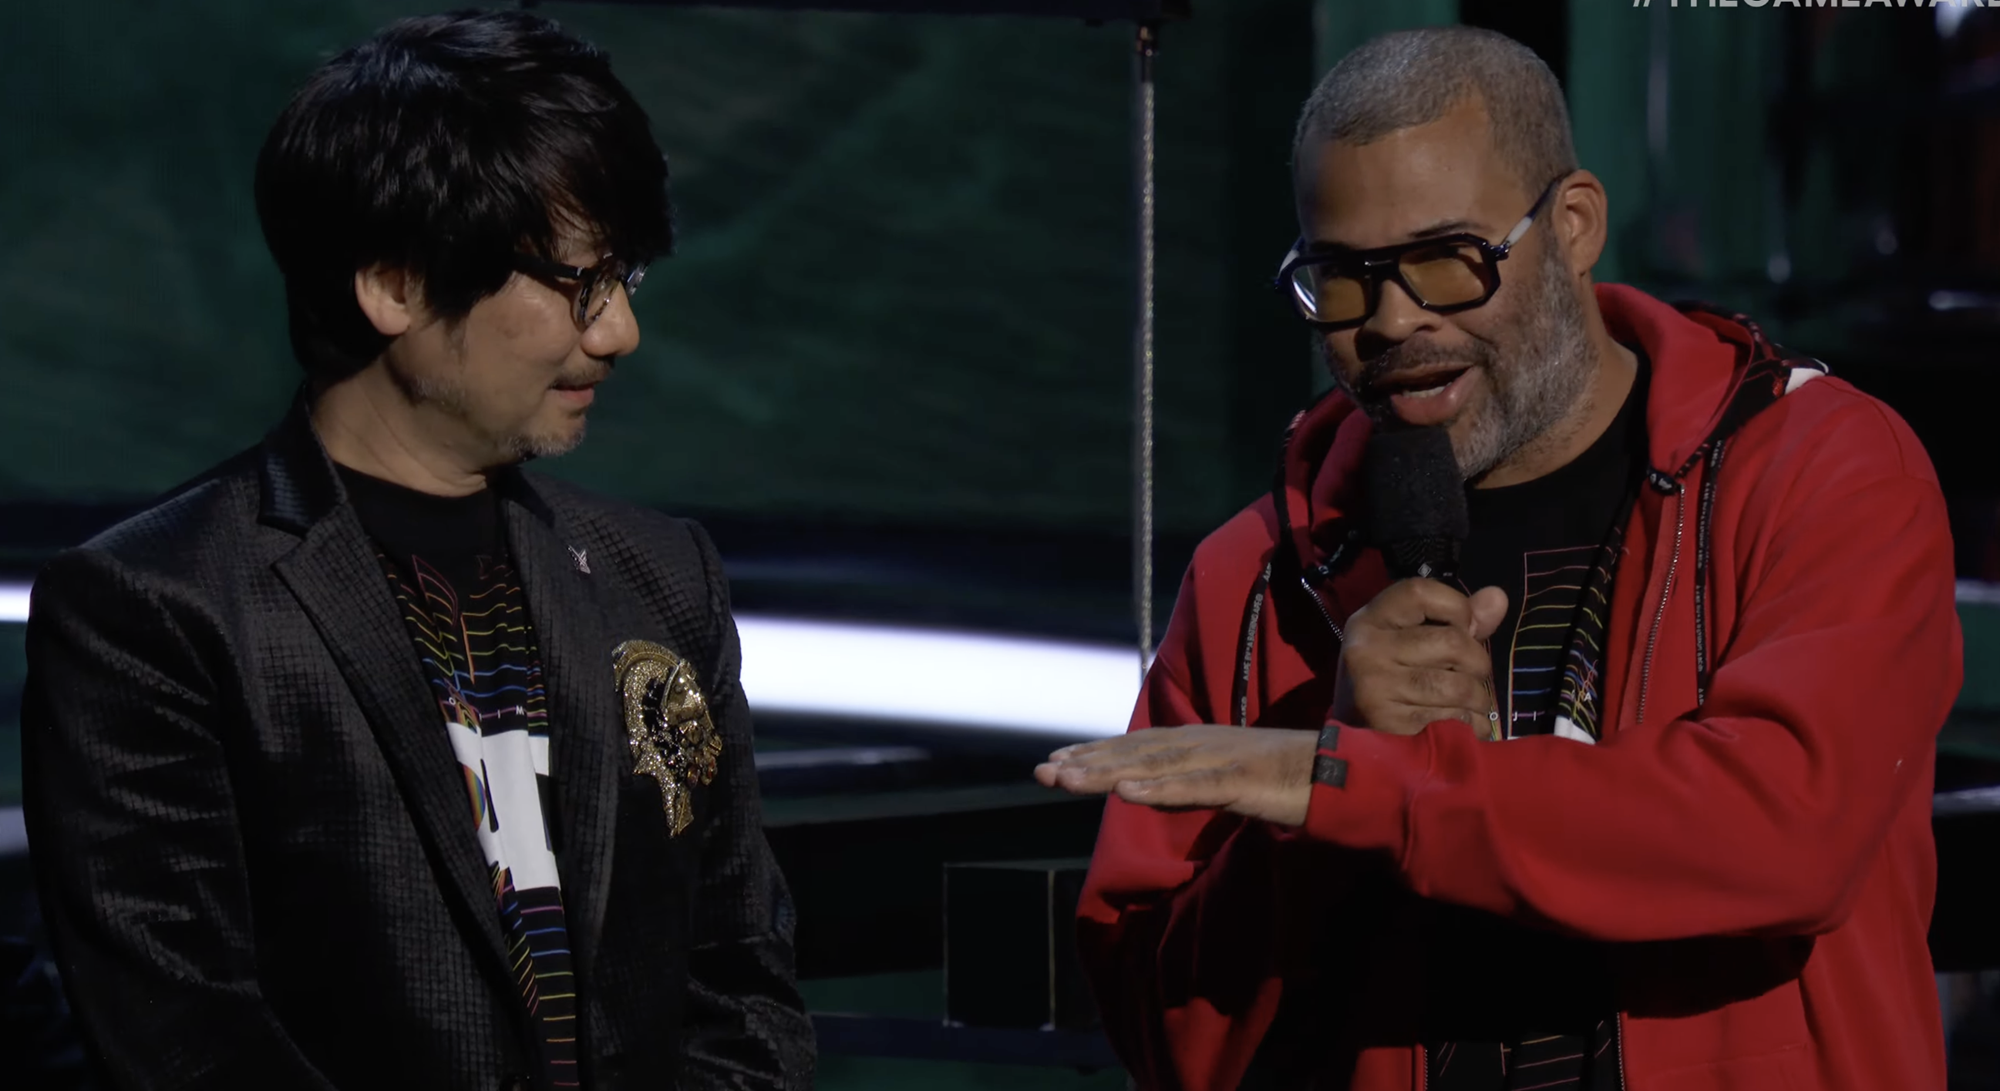 Hideo Kojima and Jordan Peele talk on stage